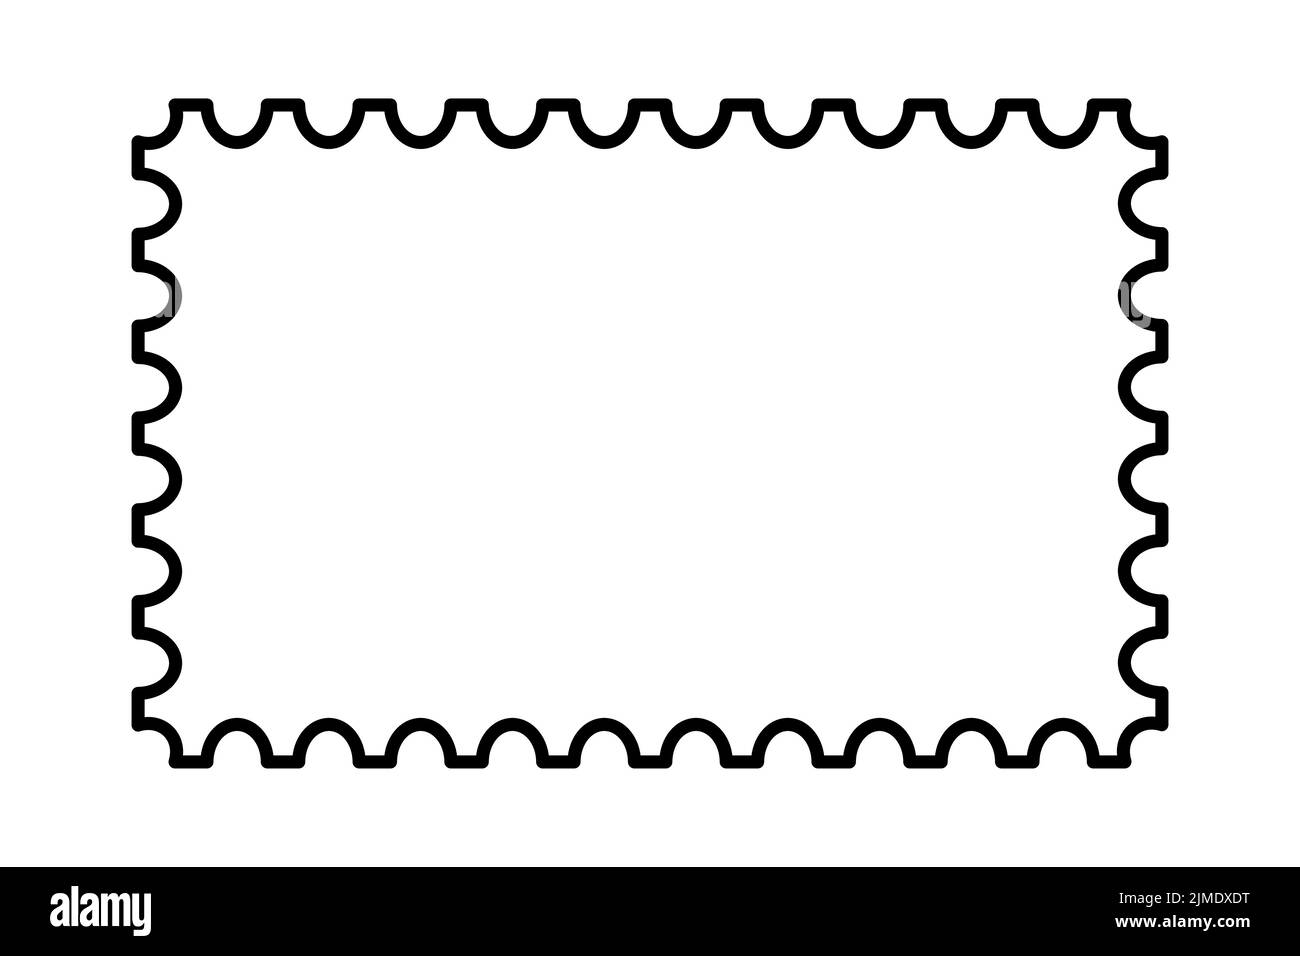 Briefmarkenrahmen. Leere Rahmenvorlage für Postkarten und Briefe. Unbeschriftetes Rechteck und quadratische Briefmarke mit perforiertem Rand. Vektor Stock Vektor